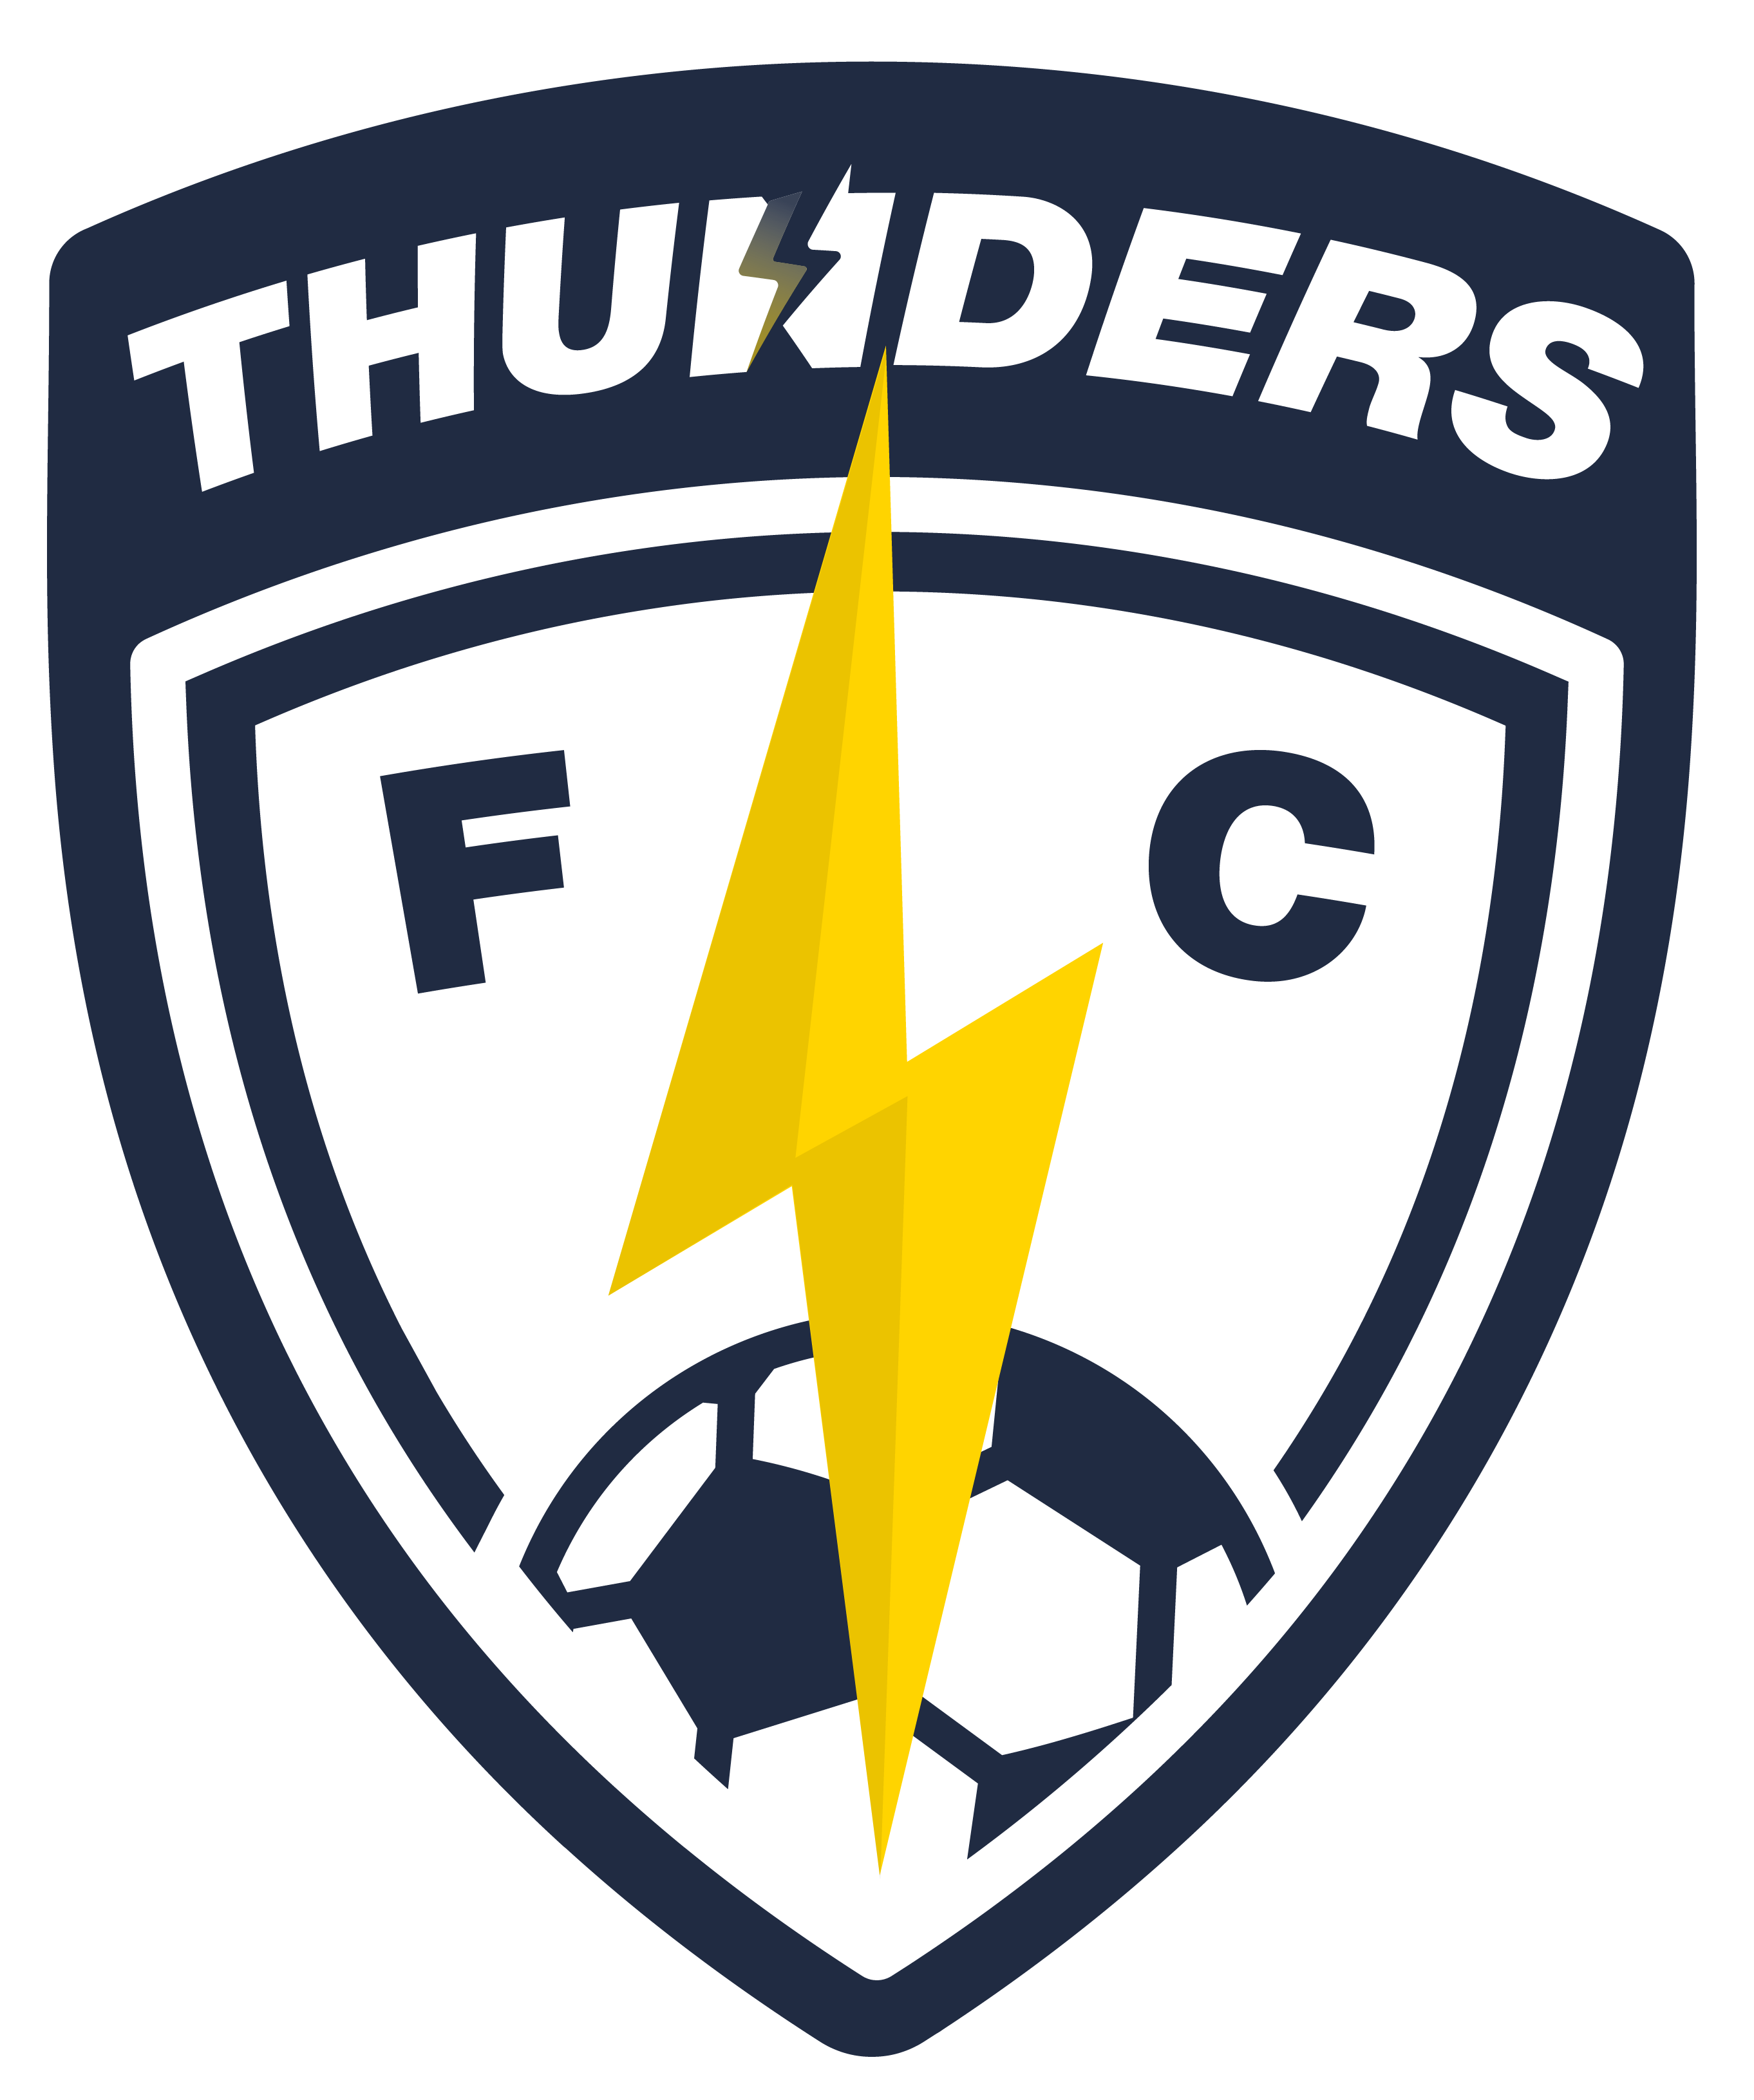 Thunders FC